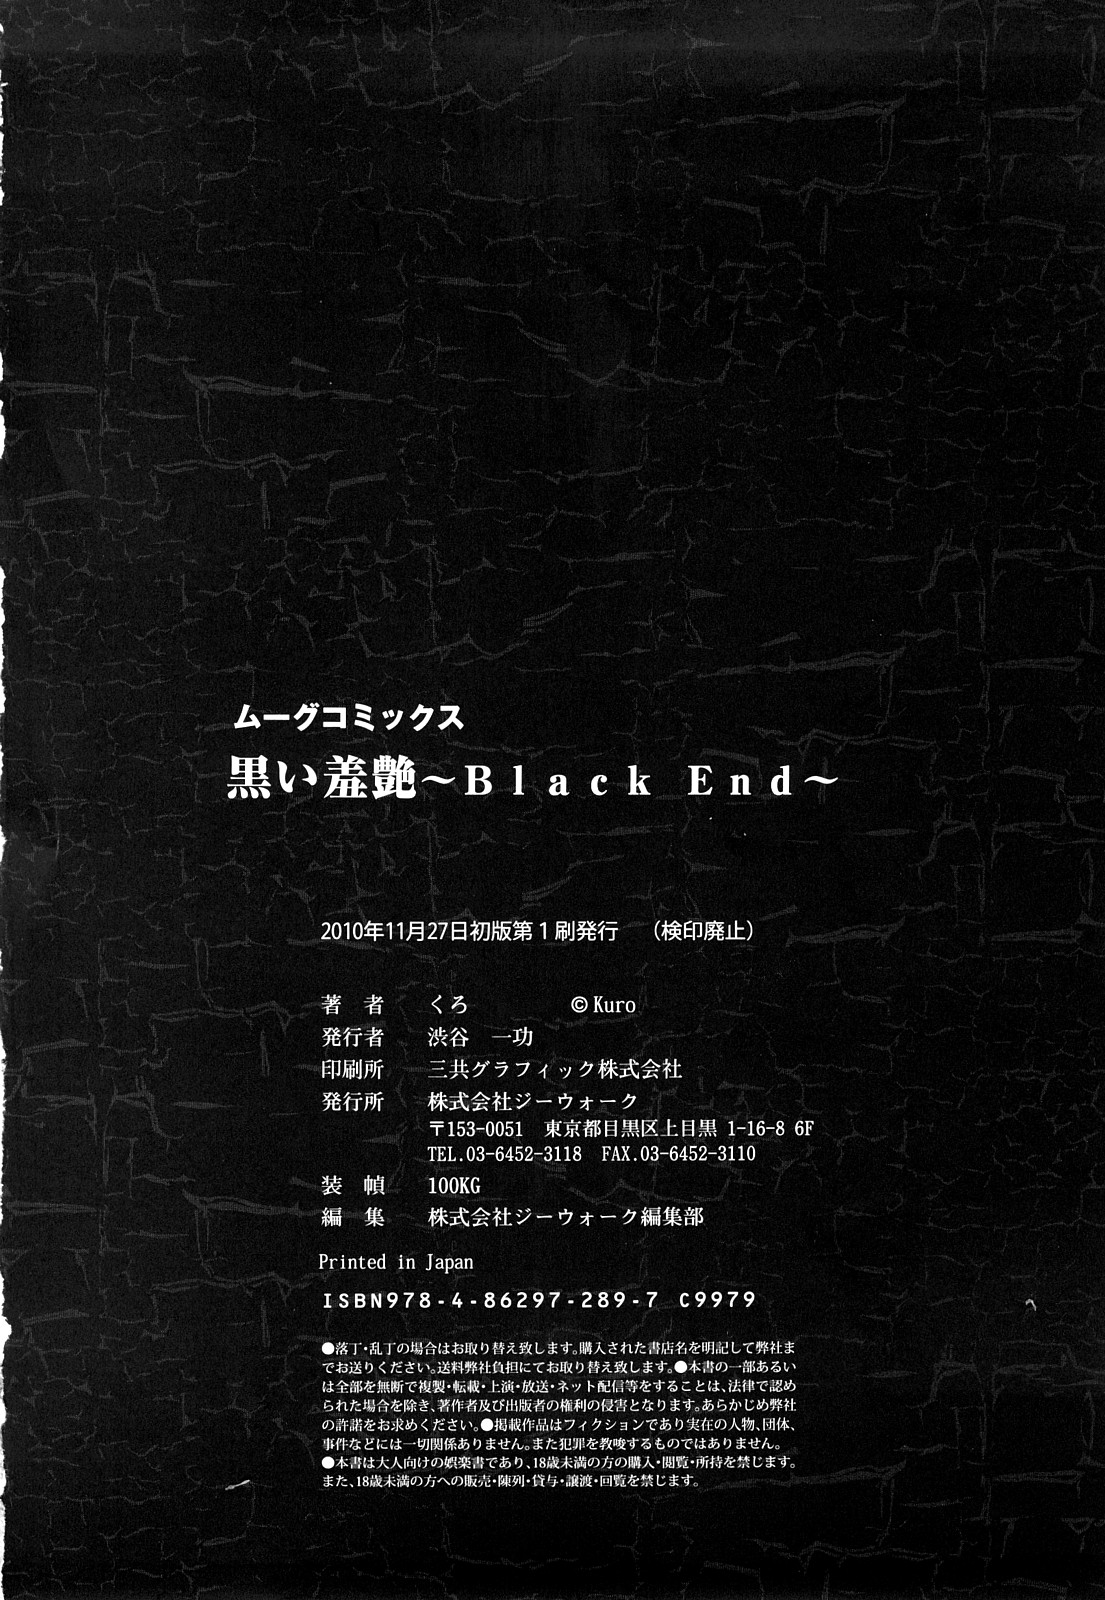 [くろ] 黒い羞艶 ~Black End~ [10-11-27]